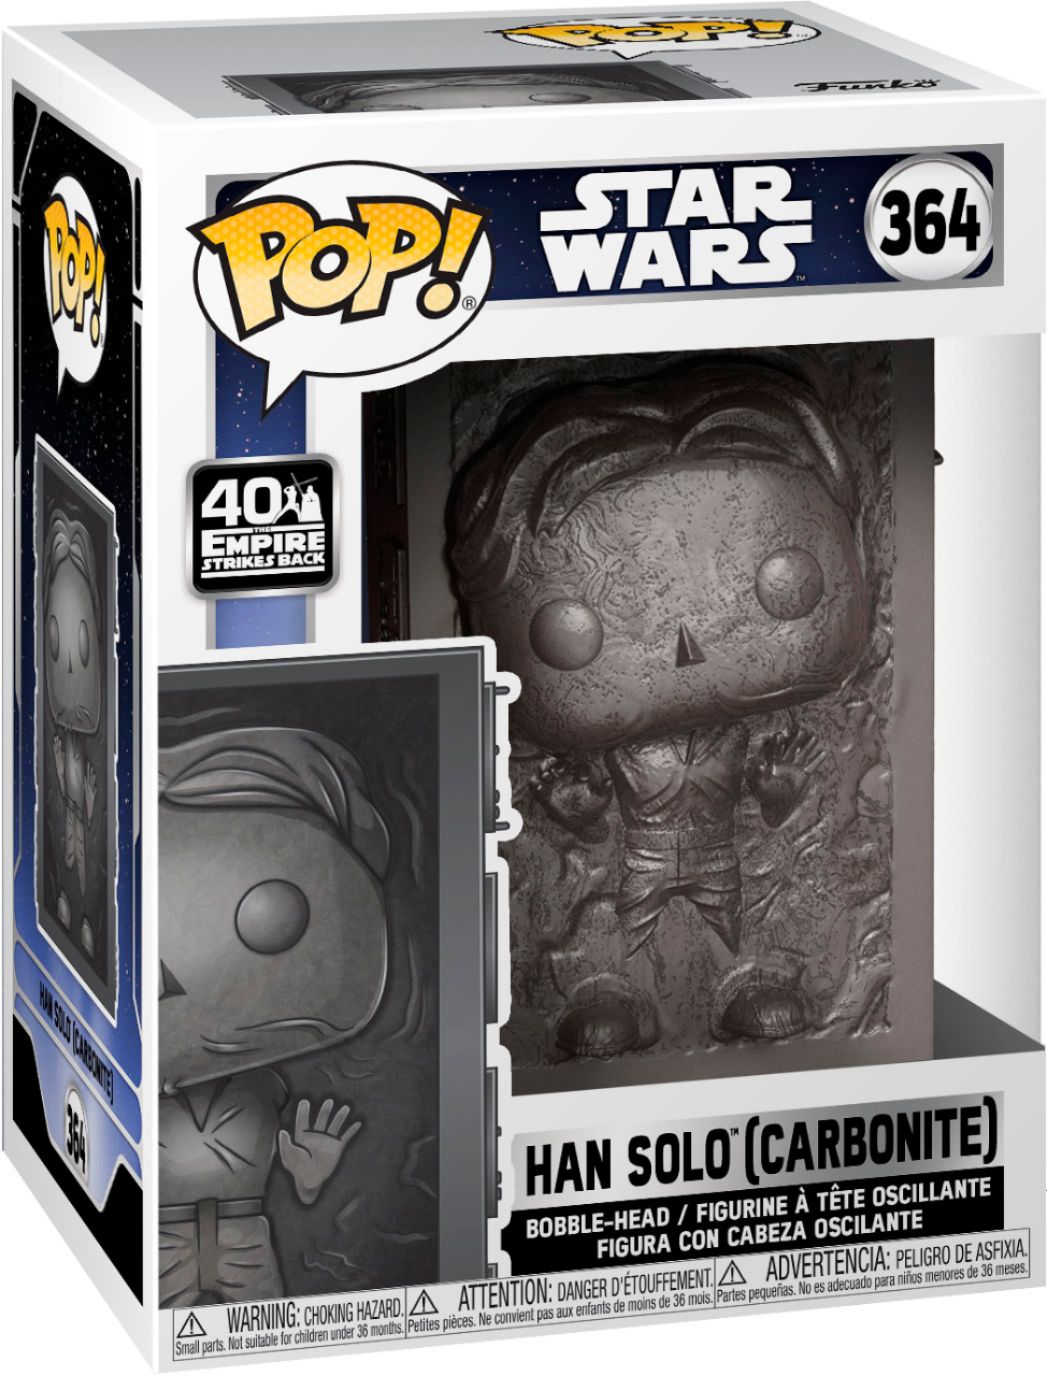 Figura de colección Han Solo Funko POP! Star Wars